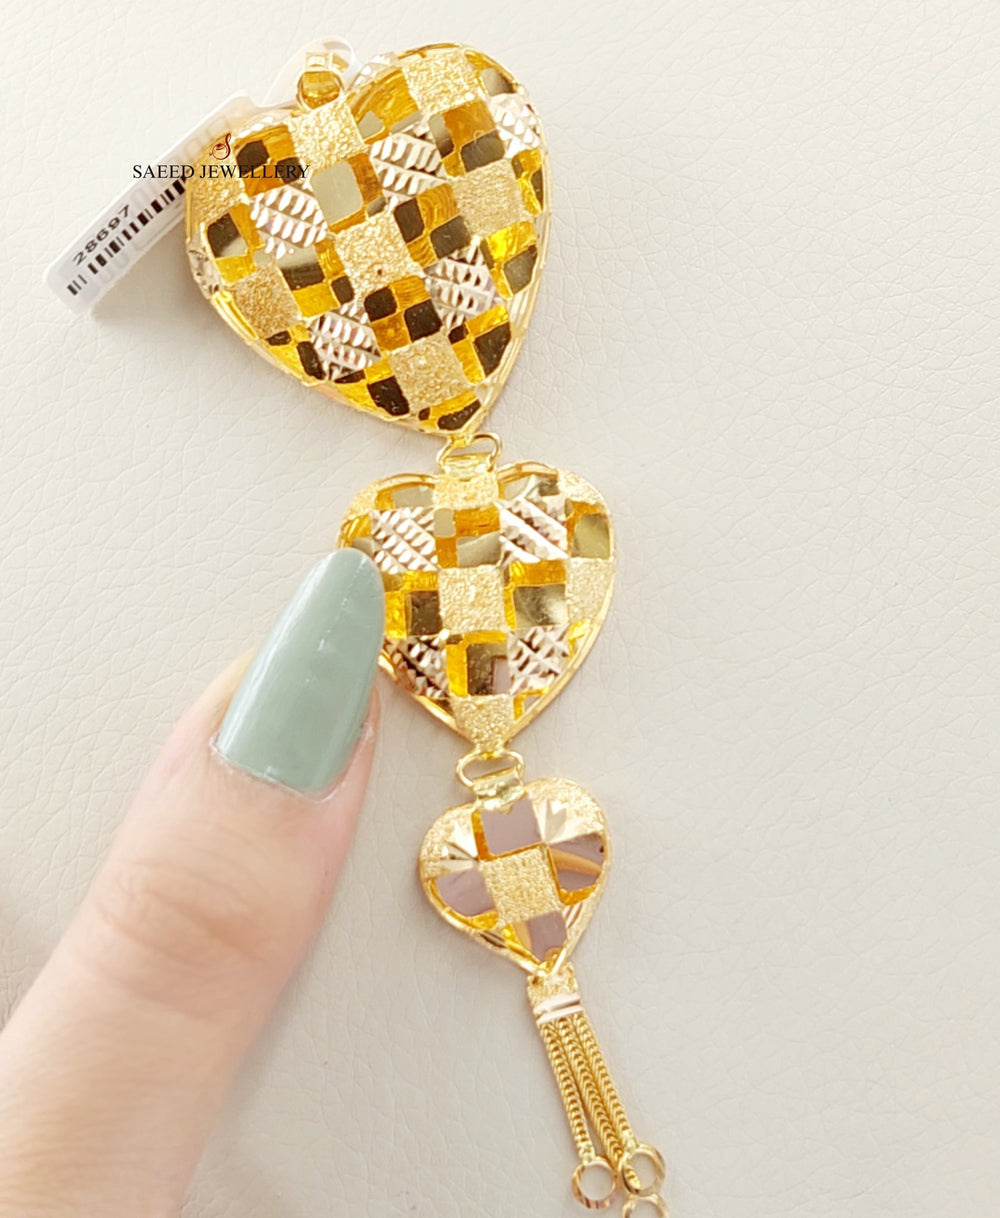 21K Gold Kuwaiti Heart Pendant by Saeed Jewelry - Image 2